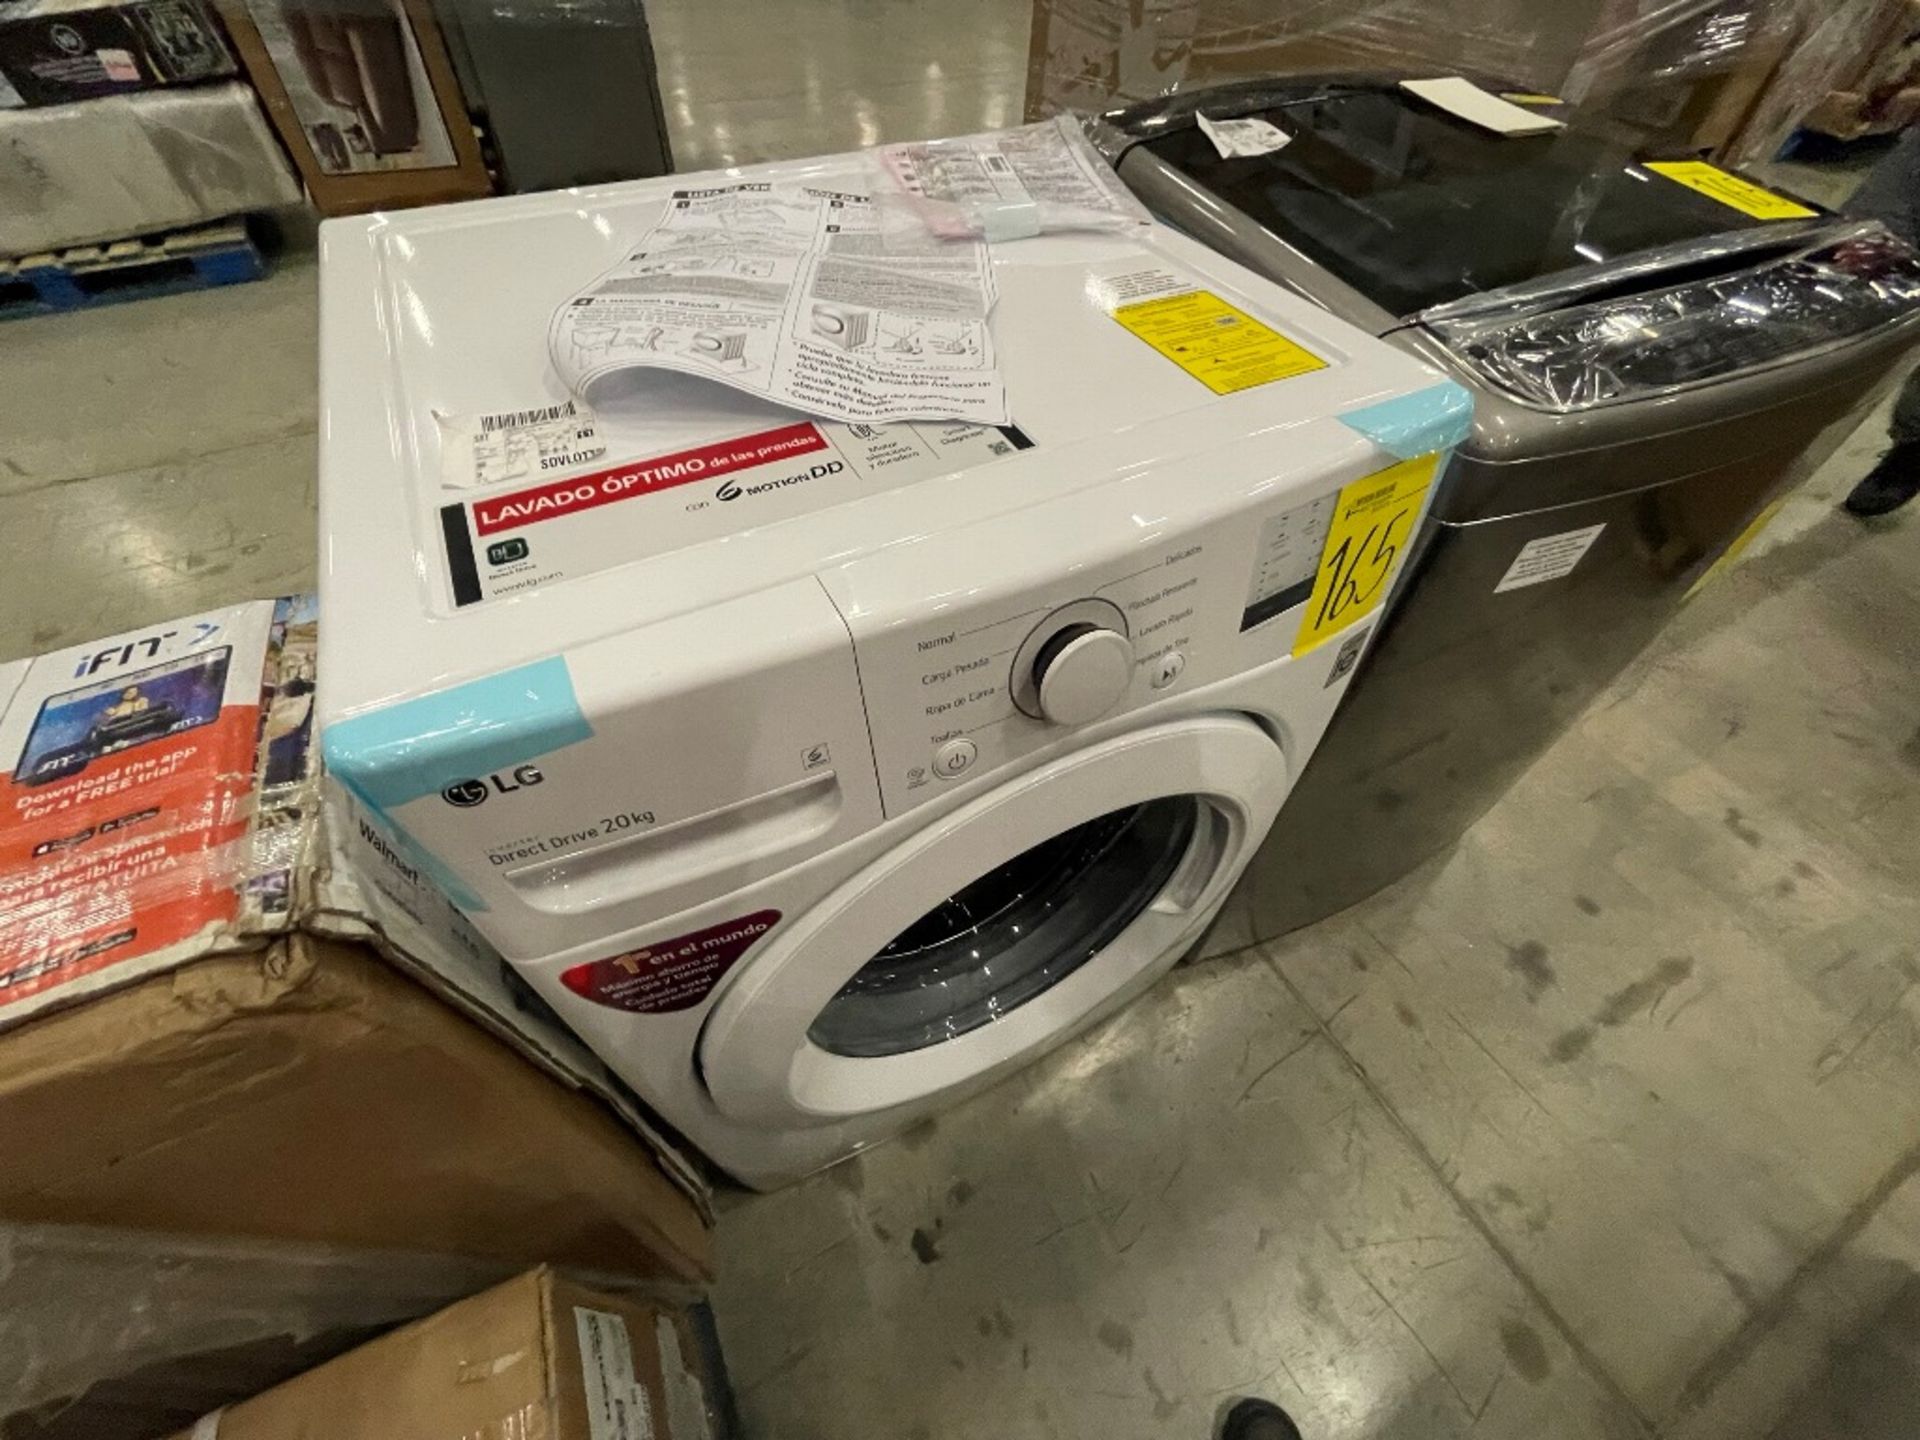 Lote de 2 lavadoras contiene: 1 lavadora de 22 kg Marca LG, Modelo WT22VSS6H, Serie R1S526, Color G - Image 14 of 16